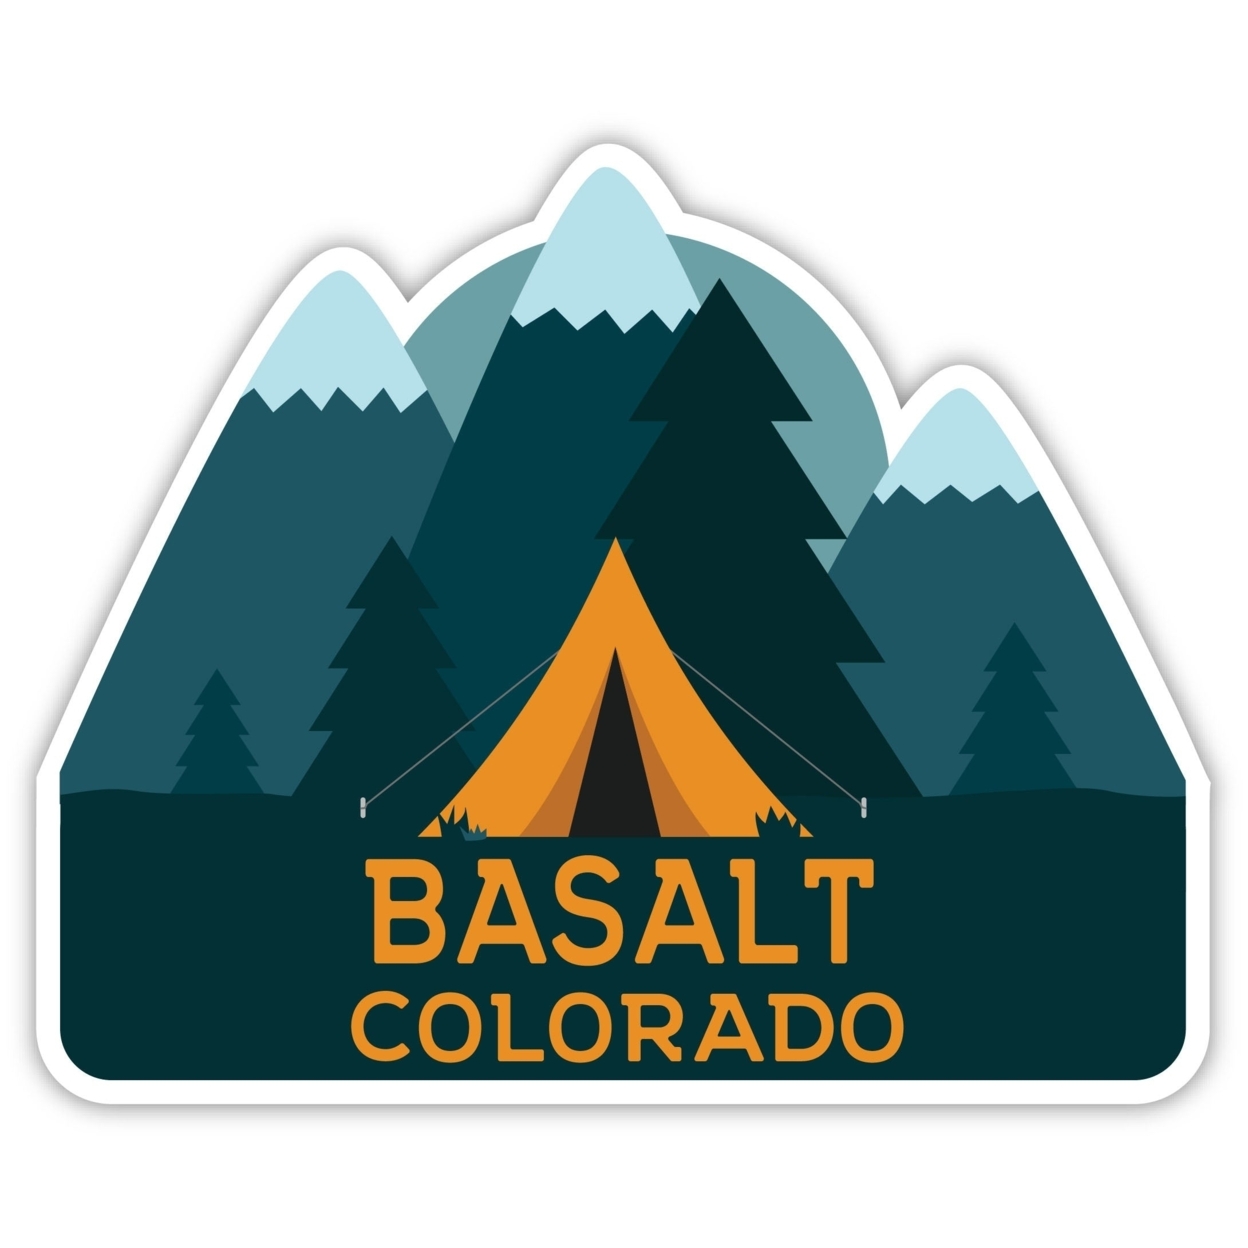 Basalt Colorado Souvenir Decorative Stickers (Choose Theme And Size) - Single Unit, 10-Inch, Tent